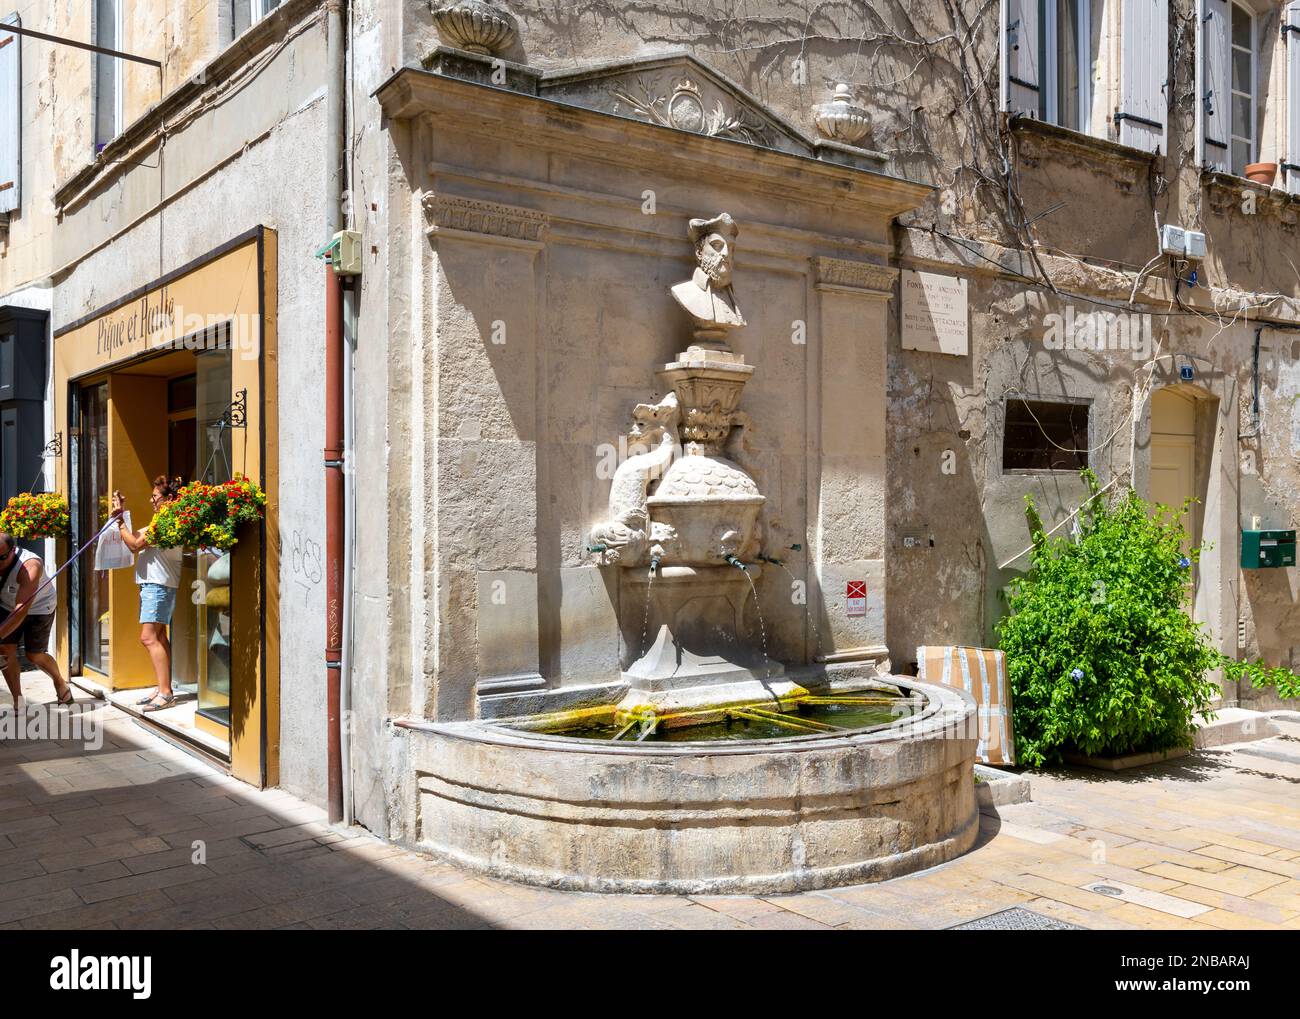 La Fontana di Nostradamus nel centro storico medievale di Saint-Remy-de-Provence, Francia, nella regione Provenza Costa Azzurra della Francia meridionale. Foto Stock